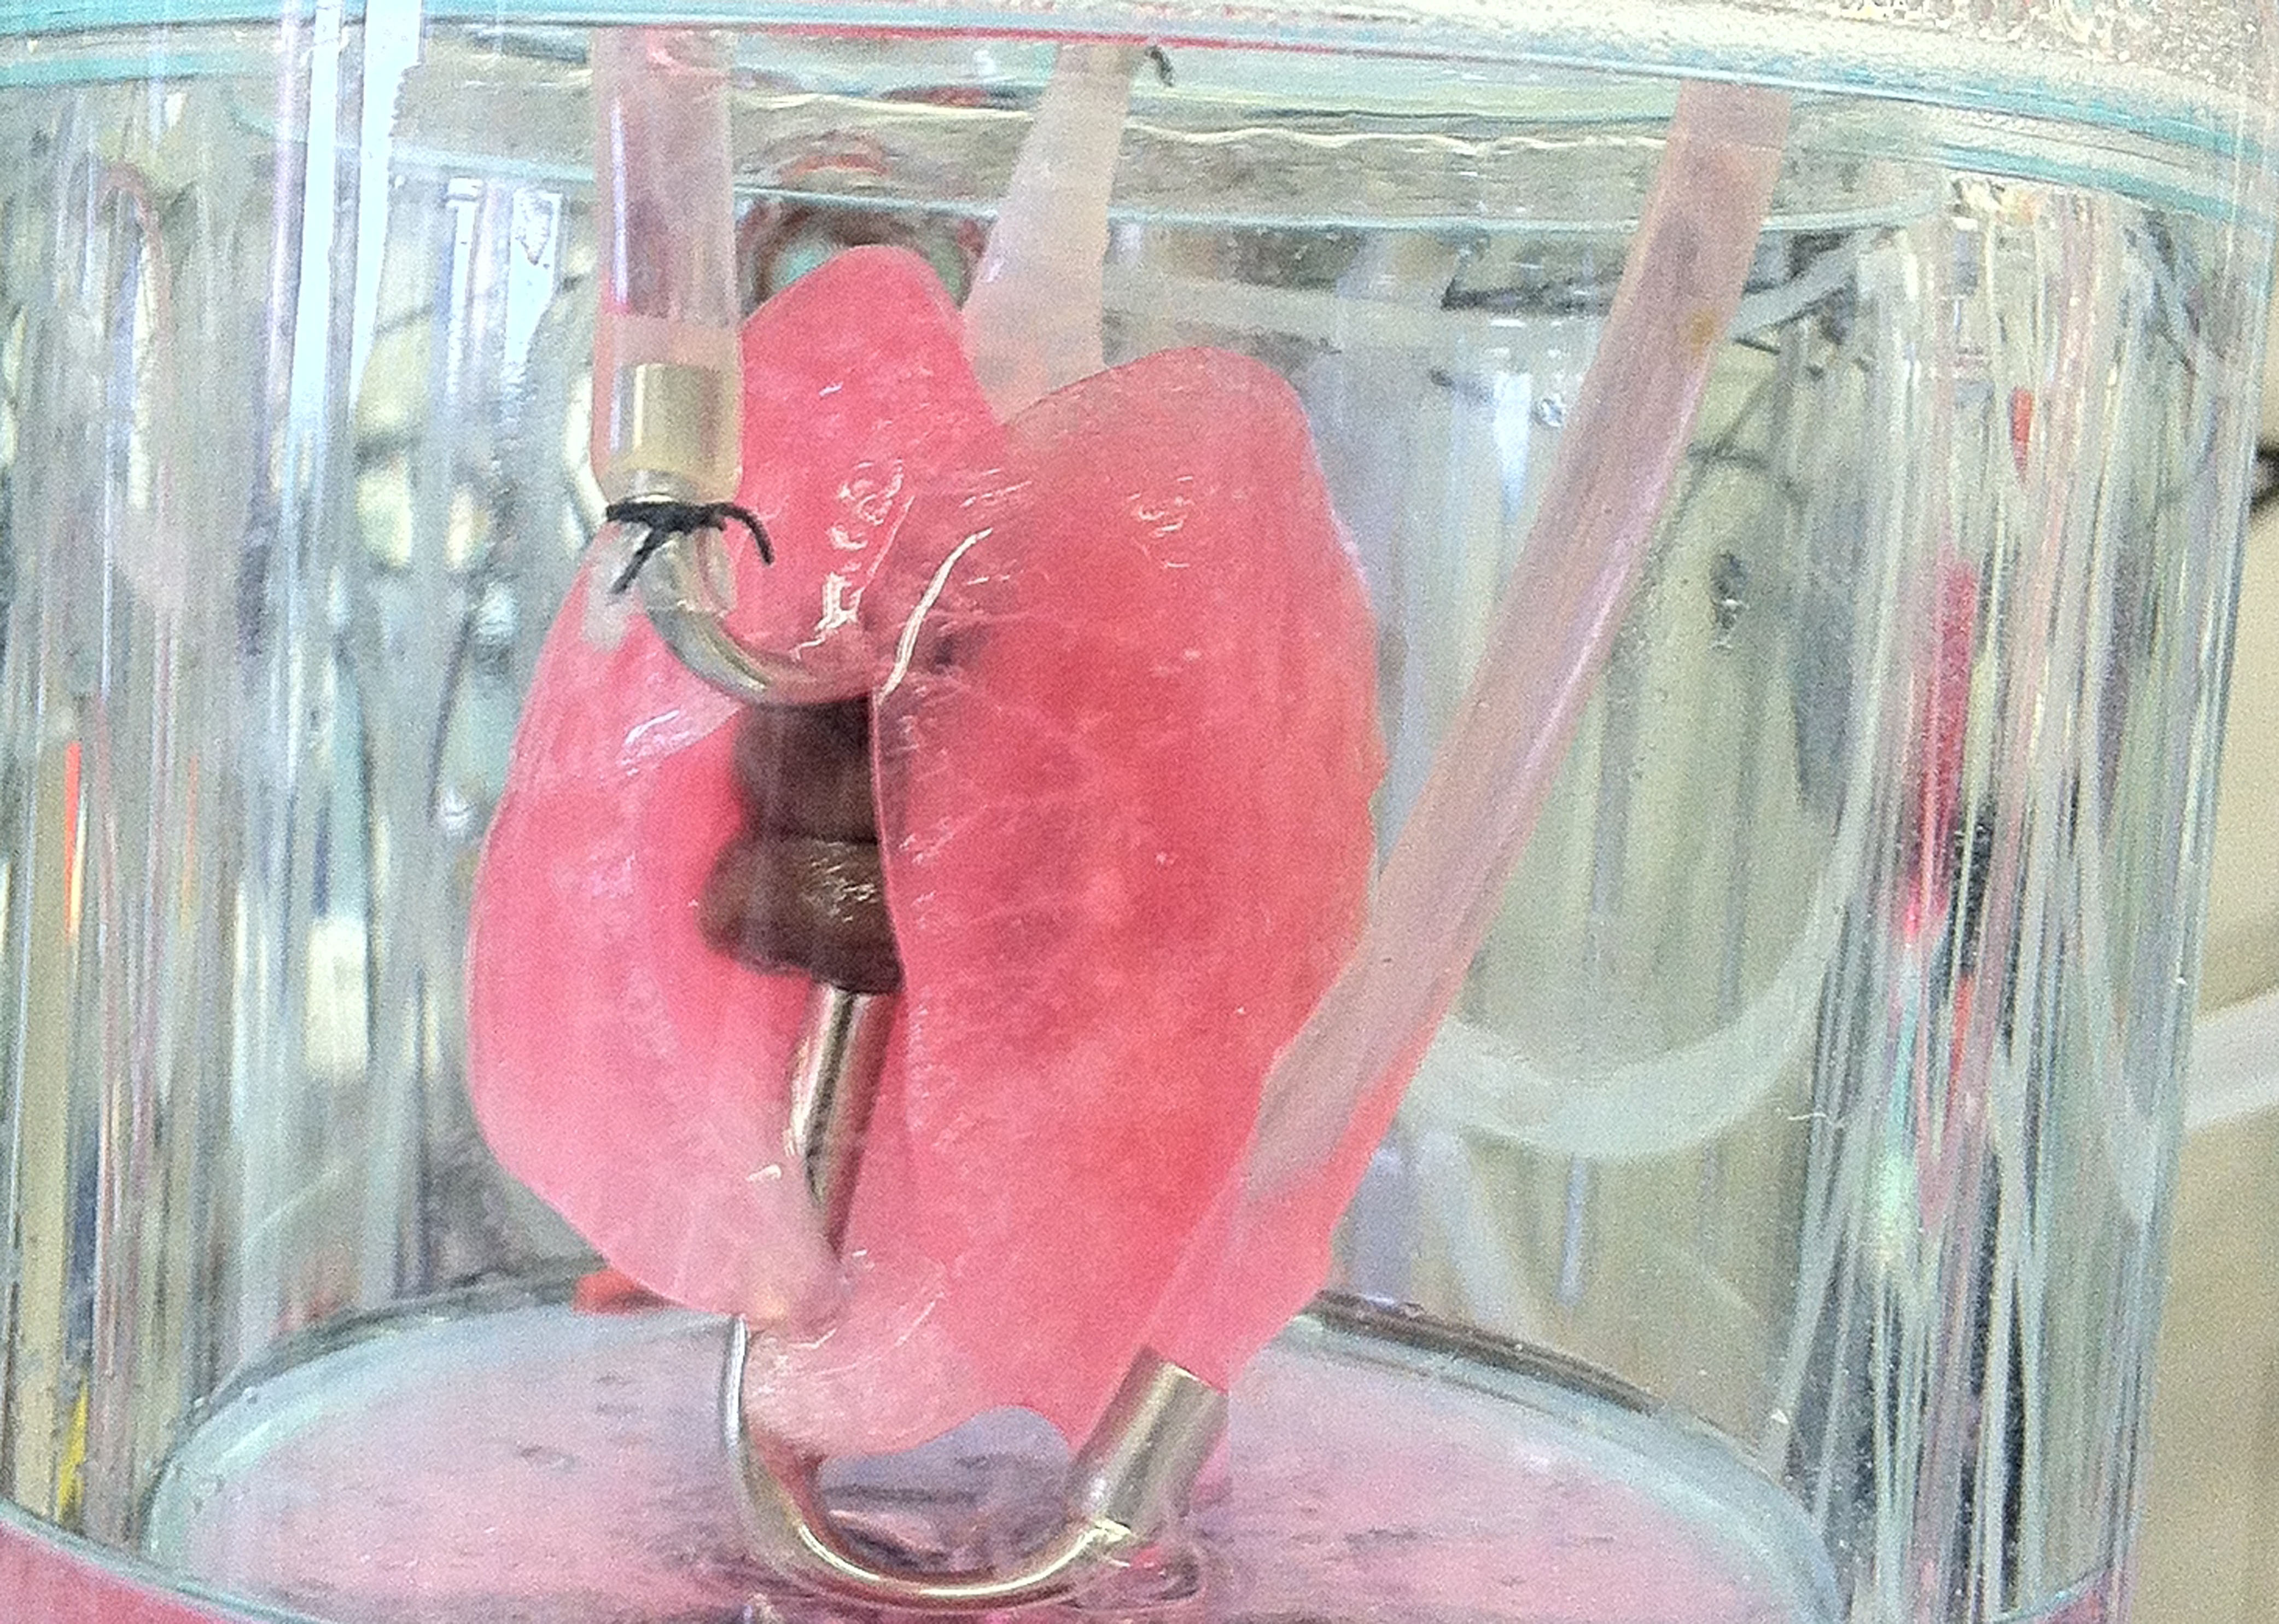 Lung Bioreactor